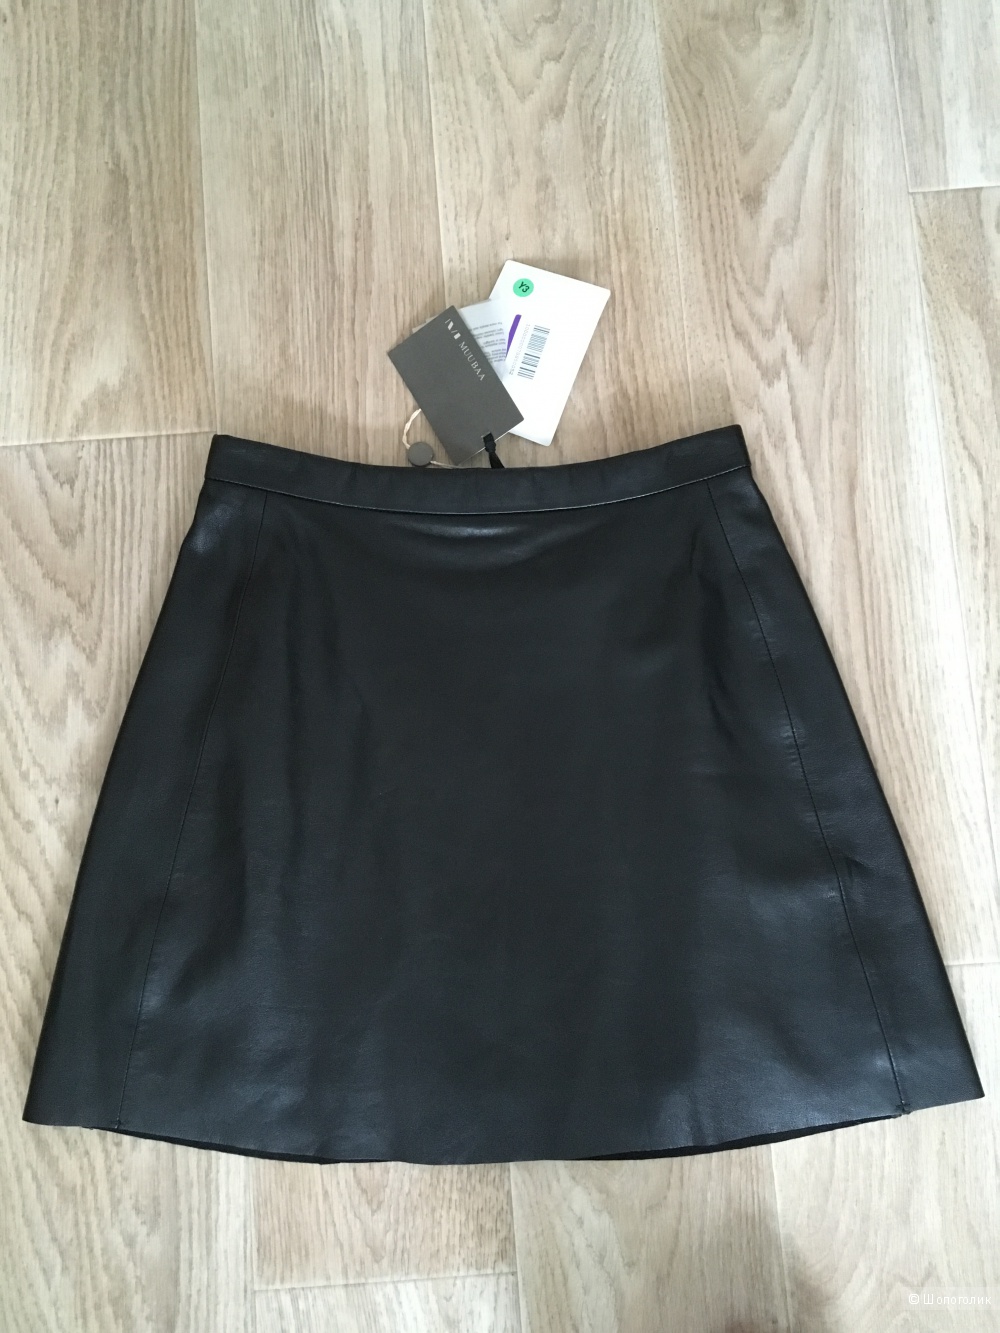 Кожаная юбка MUUBAA размер 44-46,  12 UK